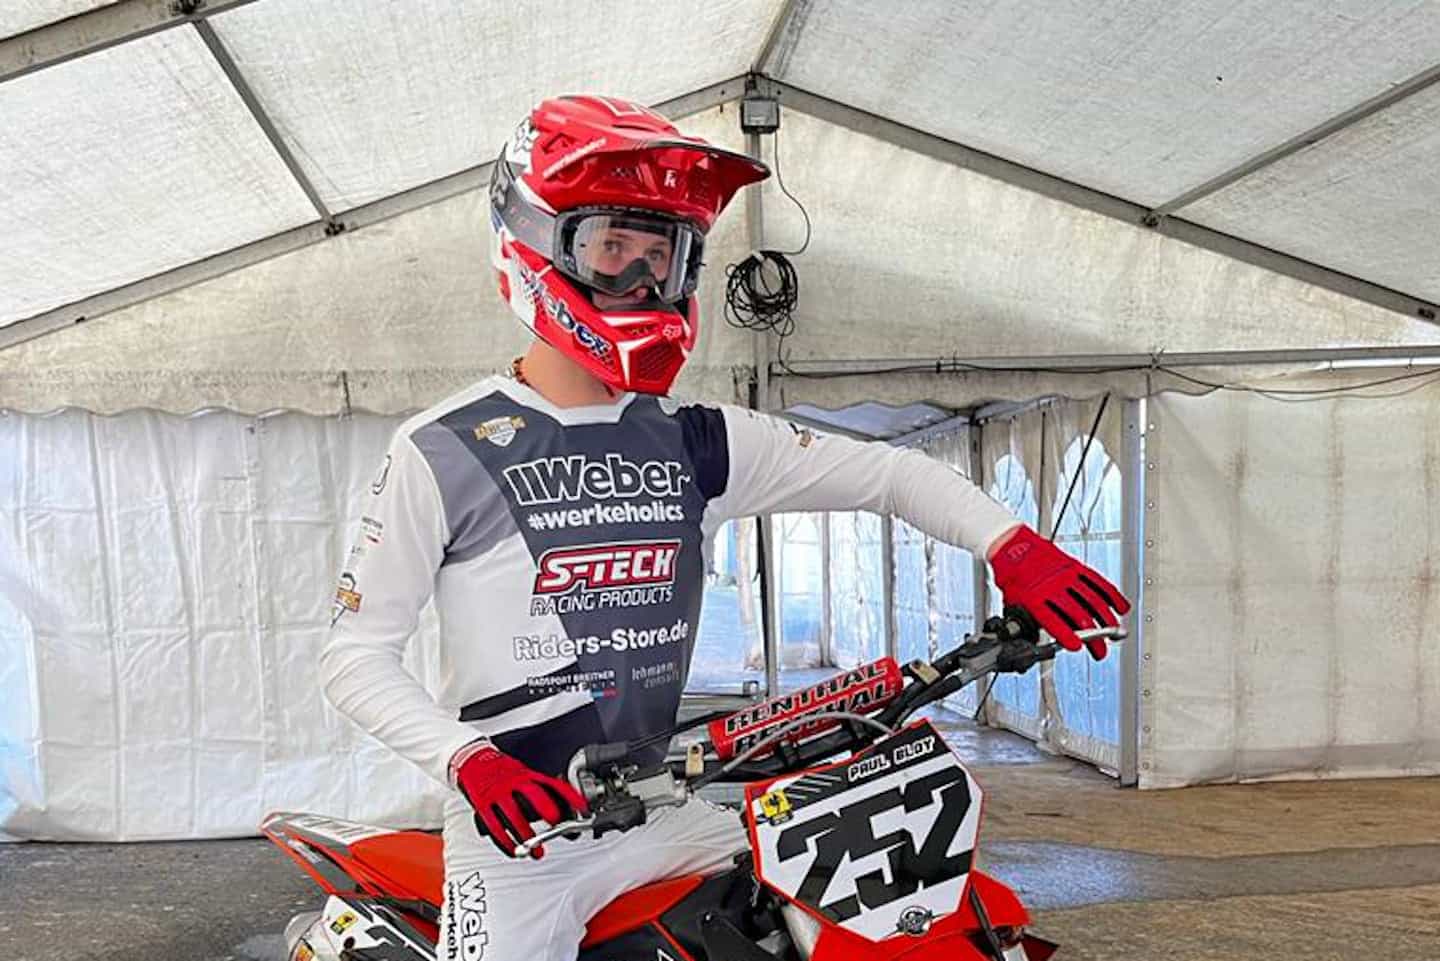 S-TECH Racing startet mit Paul Bloy beim UK Arenacross